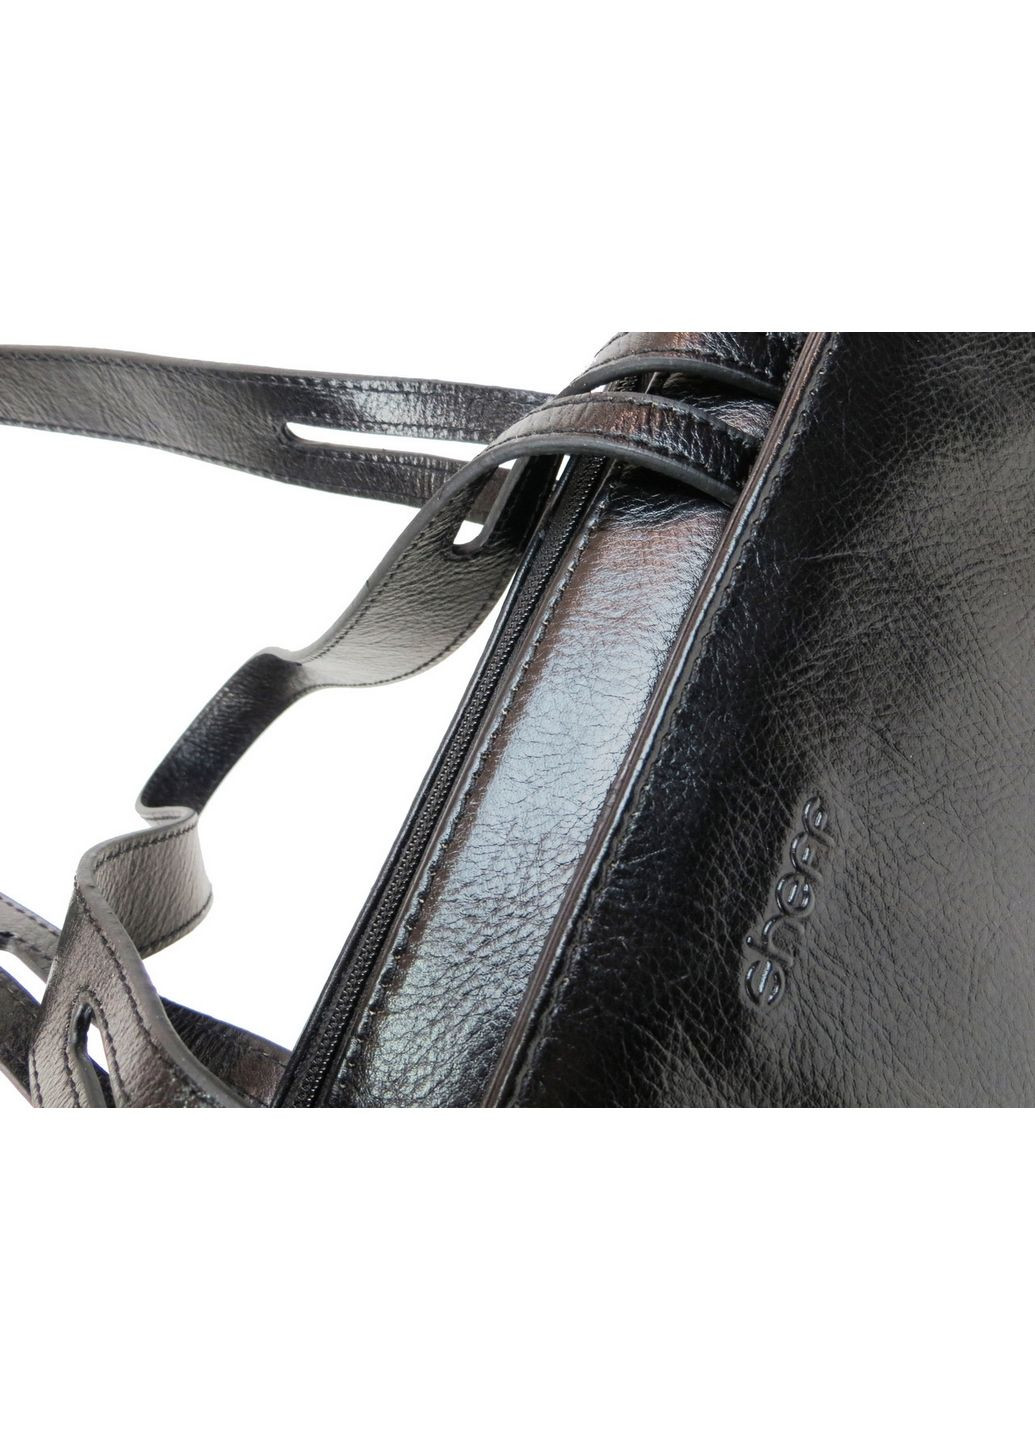 Женская деловая сумка, портфель из натуральной кожи 37х28х10 см Sheff (289367382)